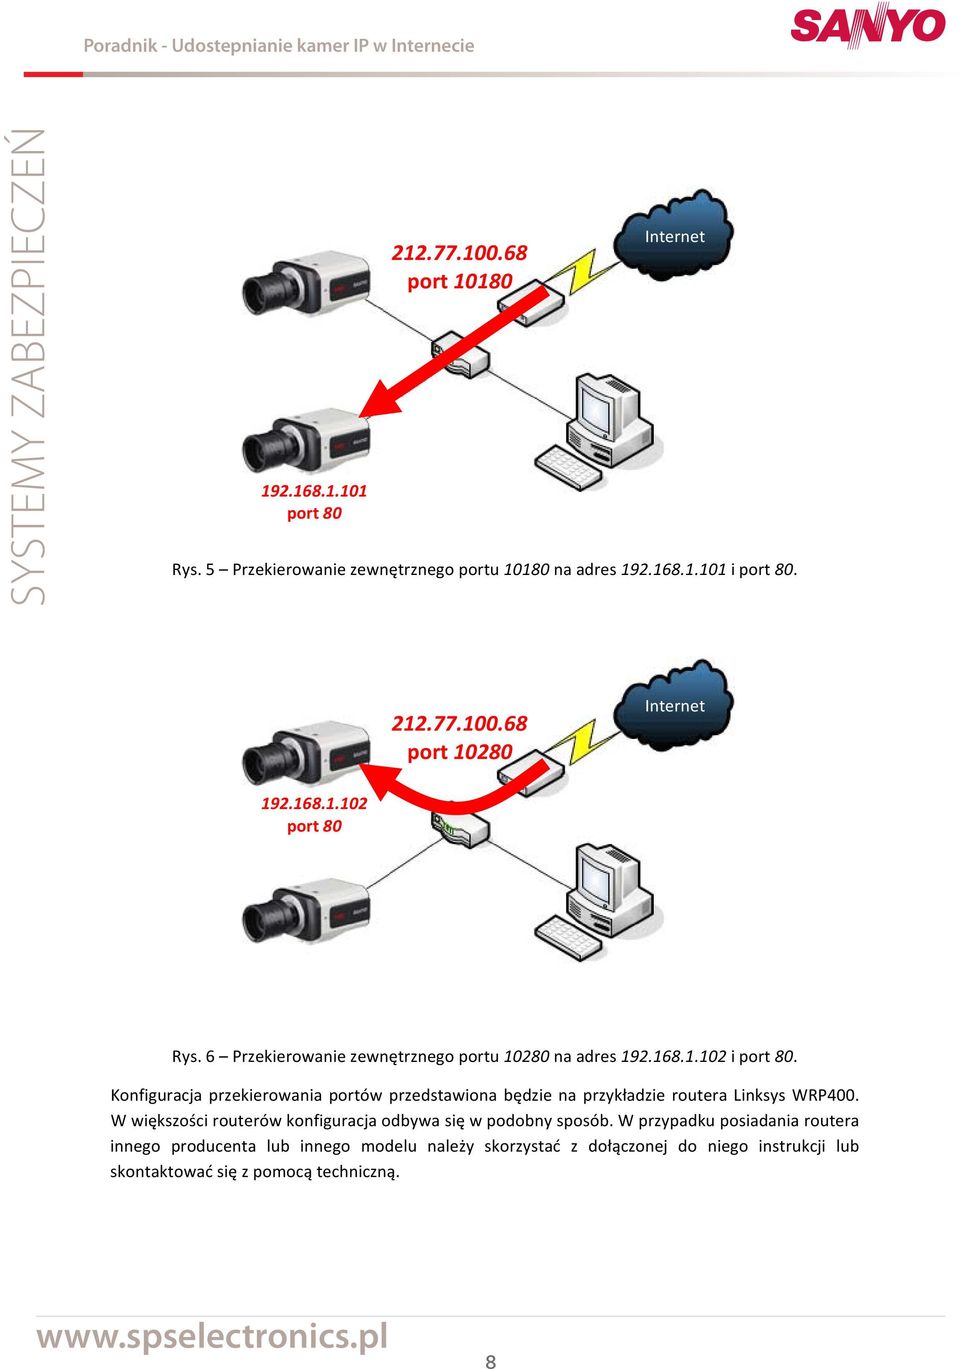 Konfiguracja przekierowania portów przedstawiona będzie na przykładzie routera Linksys WRP400.